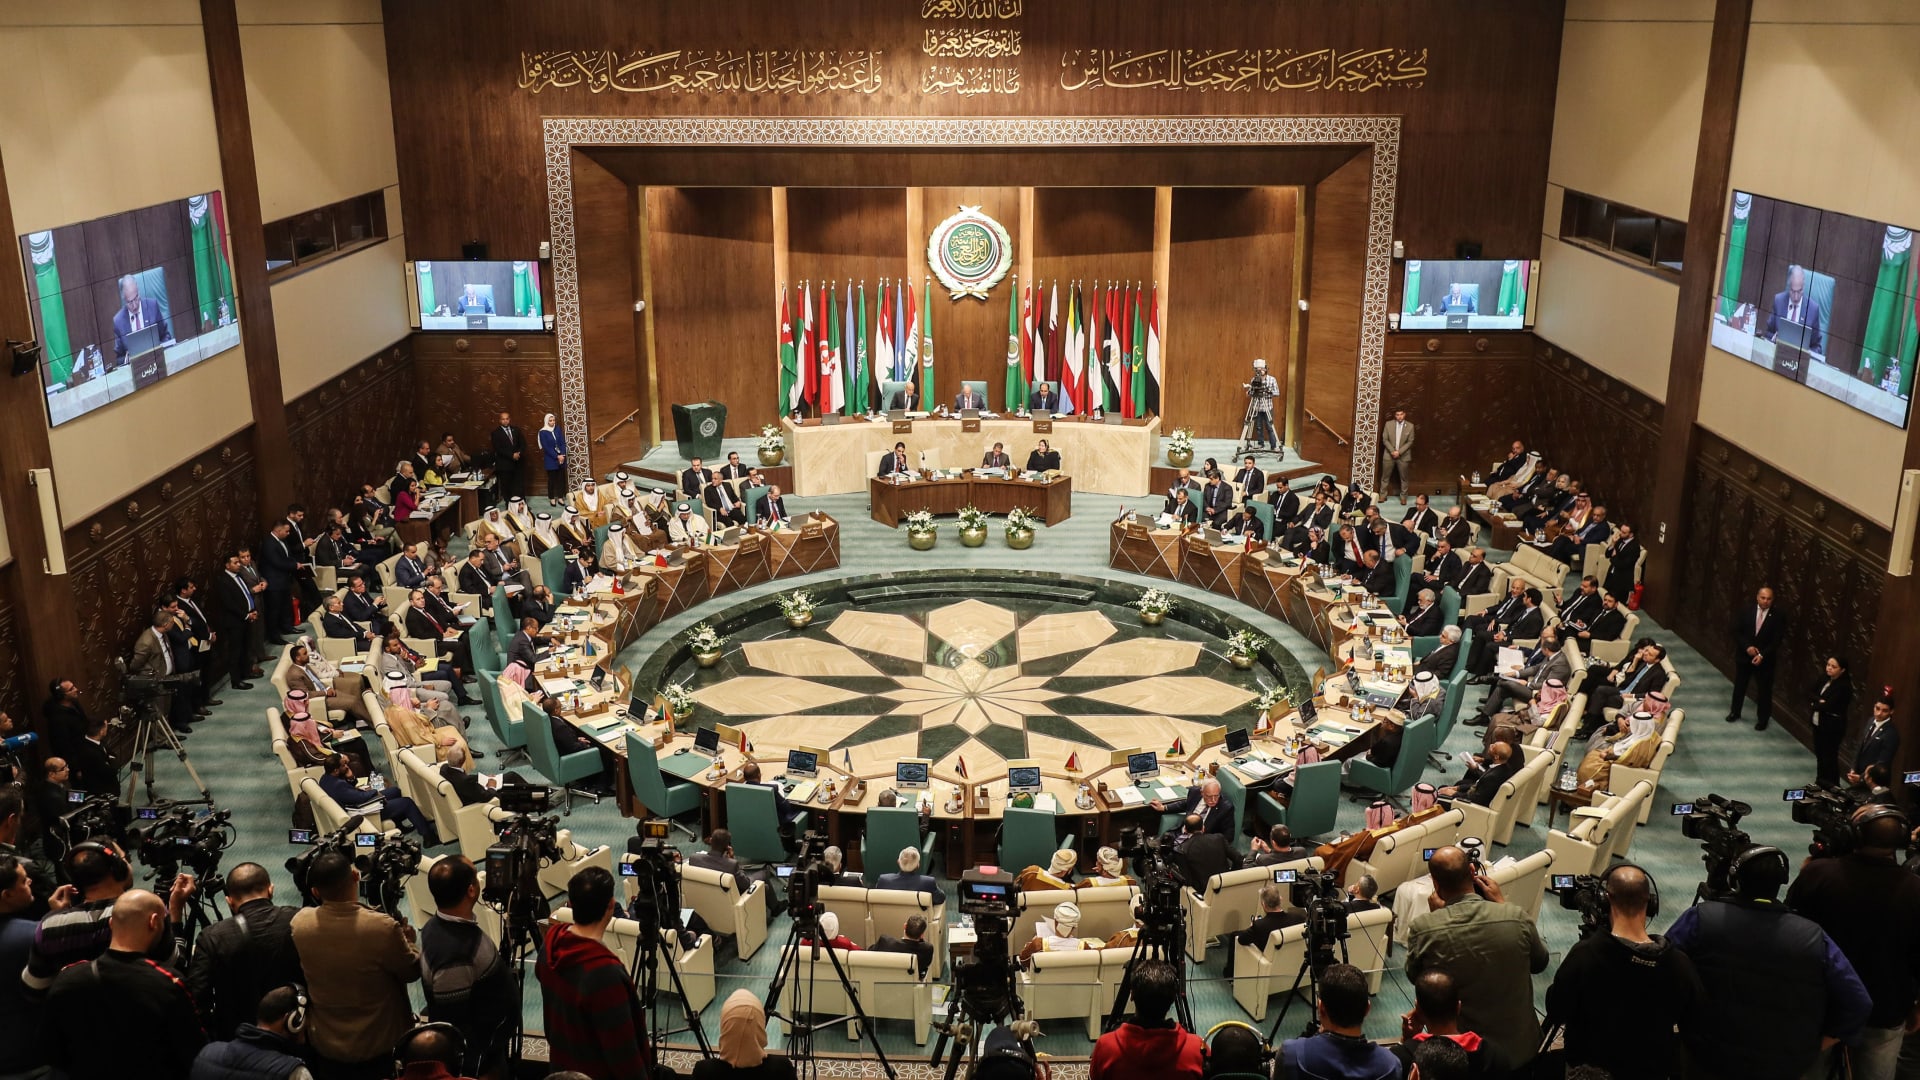 لـ"أسباب تقنية".. تأجيل اجتماع وزراء الخارجية العرب حول ليبيا إلى الثلاثاء